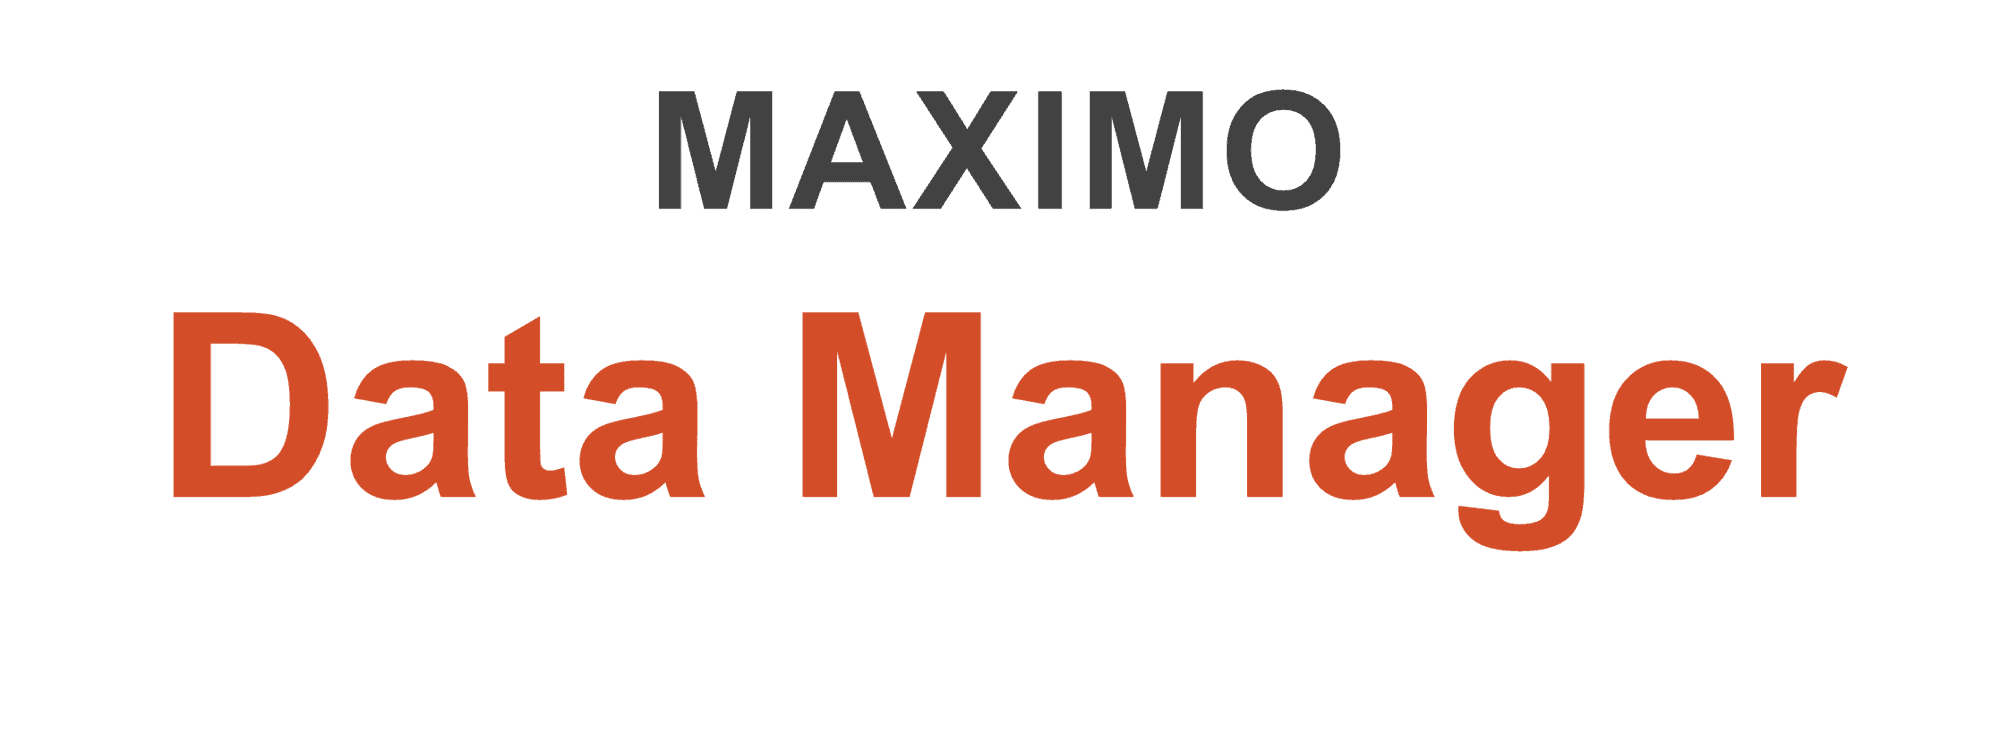 Auf diesem Bild sieht man das Logo des Produkts MAXIMO Data Manager